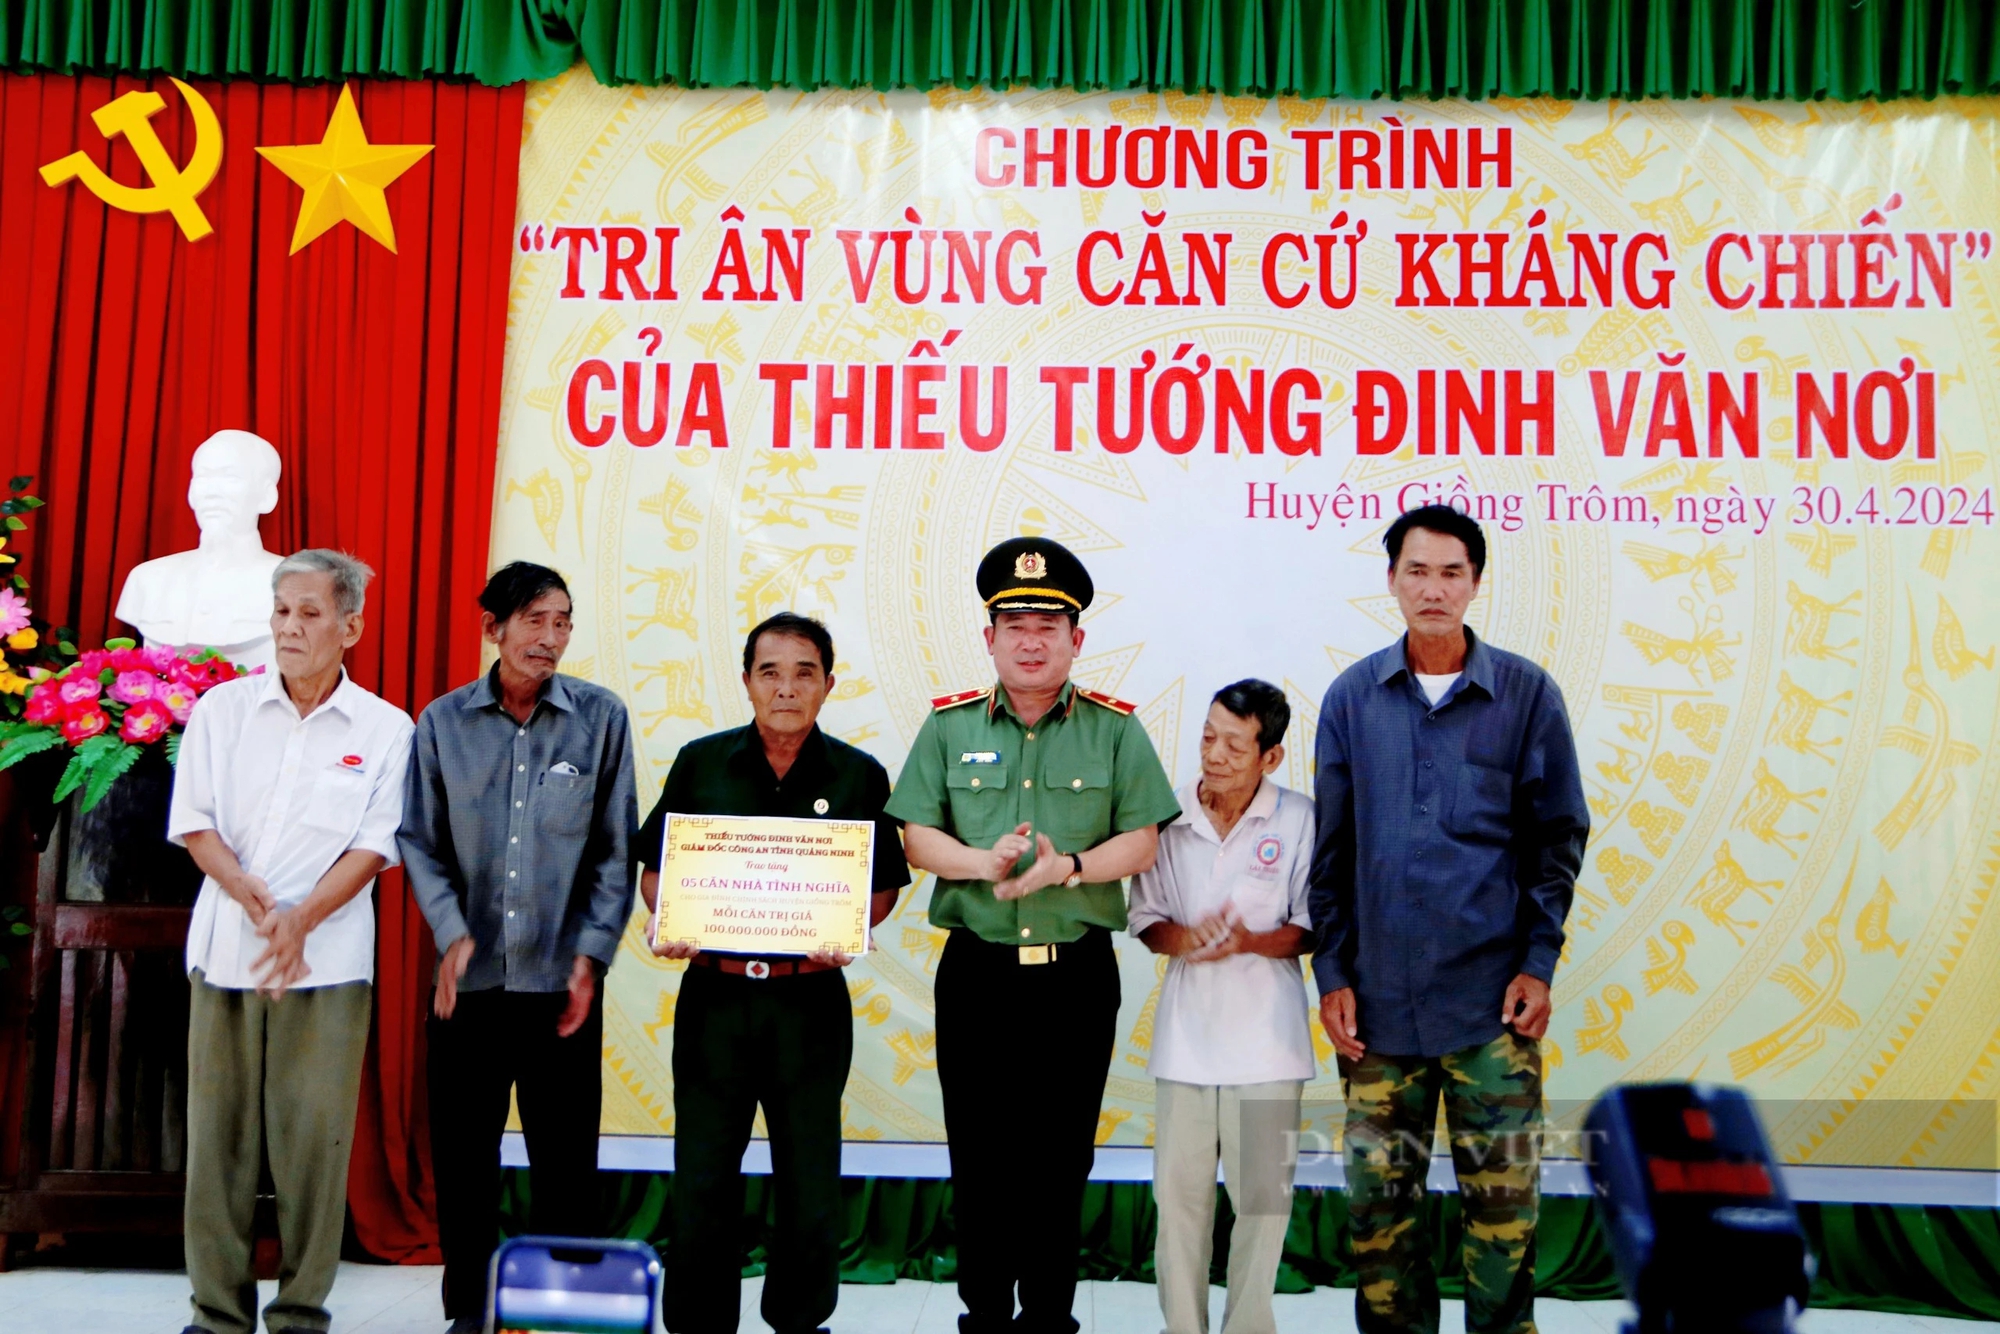 Thiếu tướng Đinh Văn Nơi tri ân người có công với cách mạng tại Giồng Trôm, tỉnh Bến Tre- Ảnh 2.